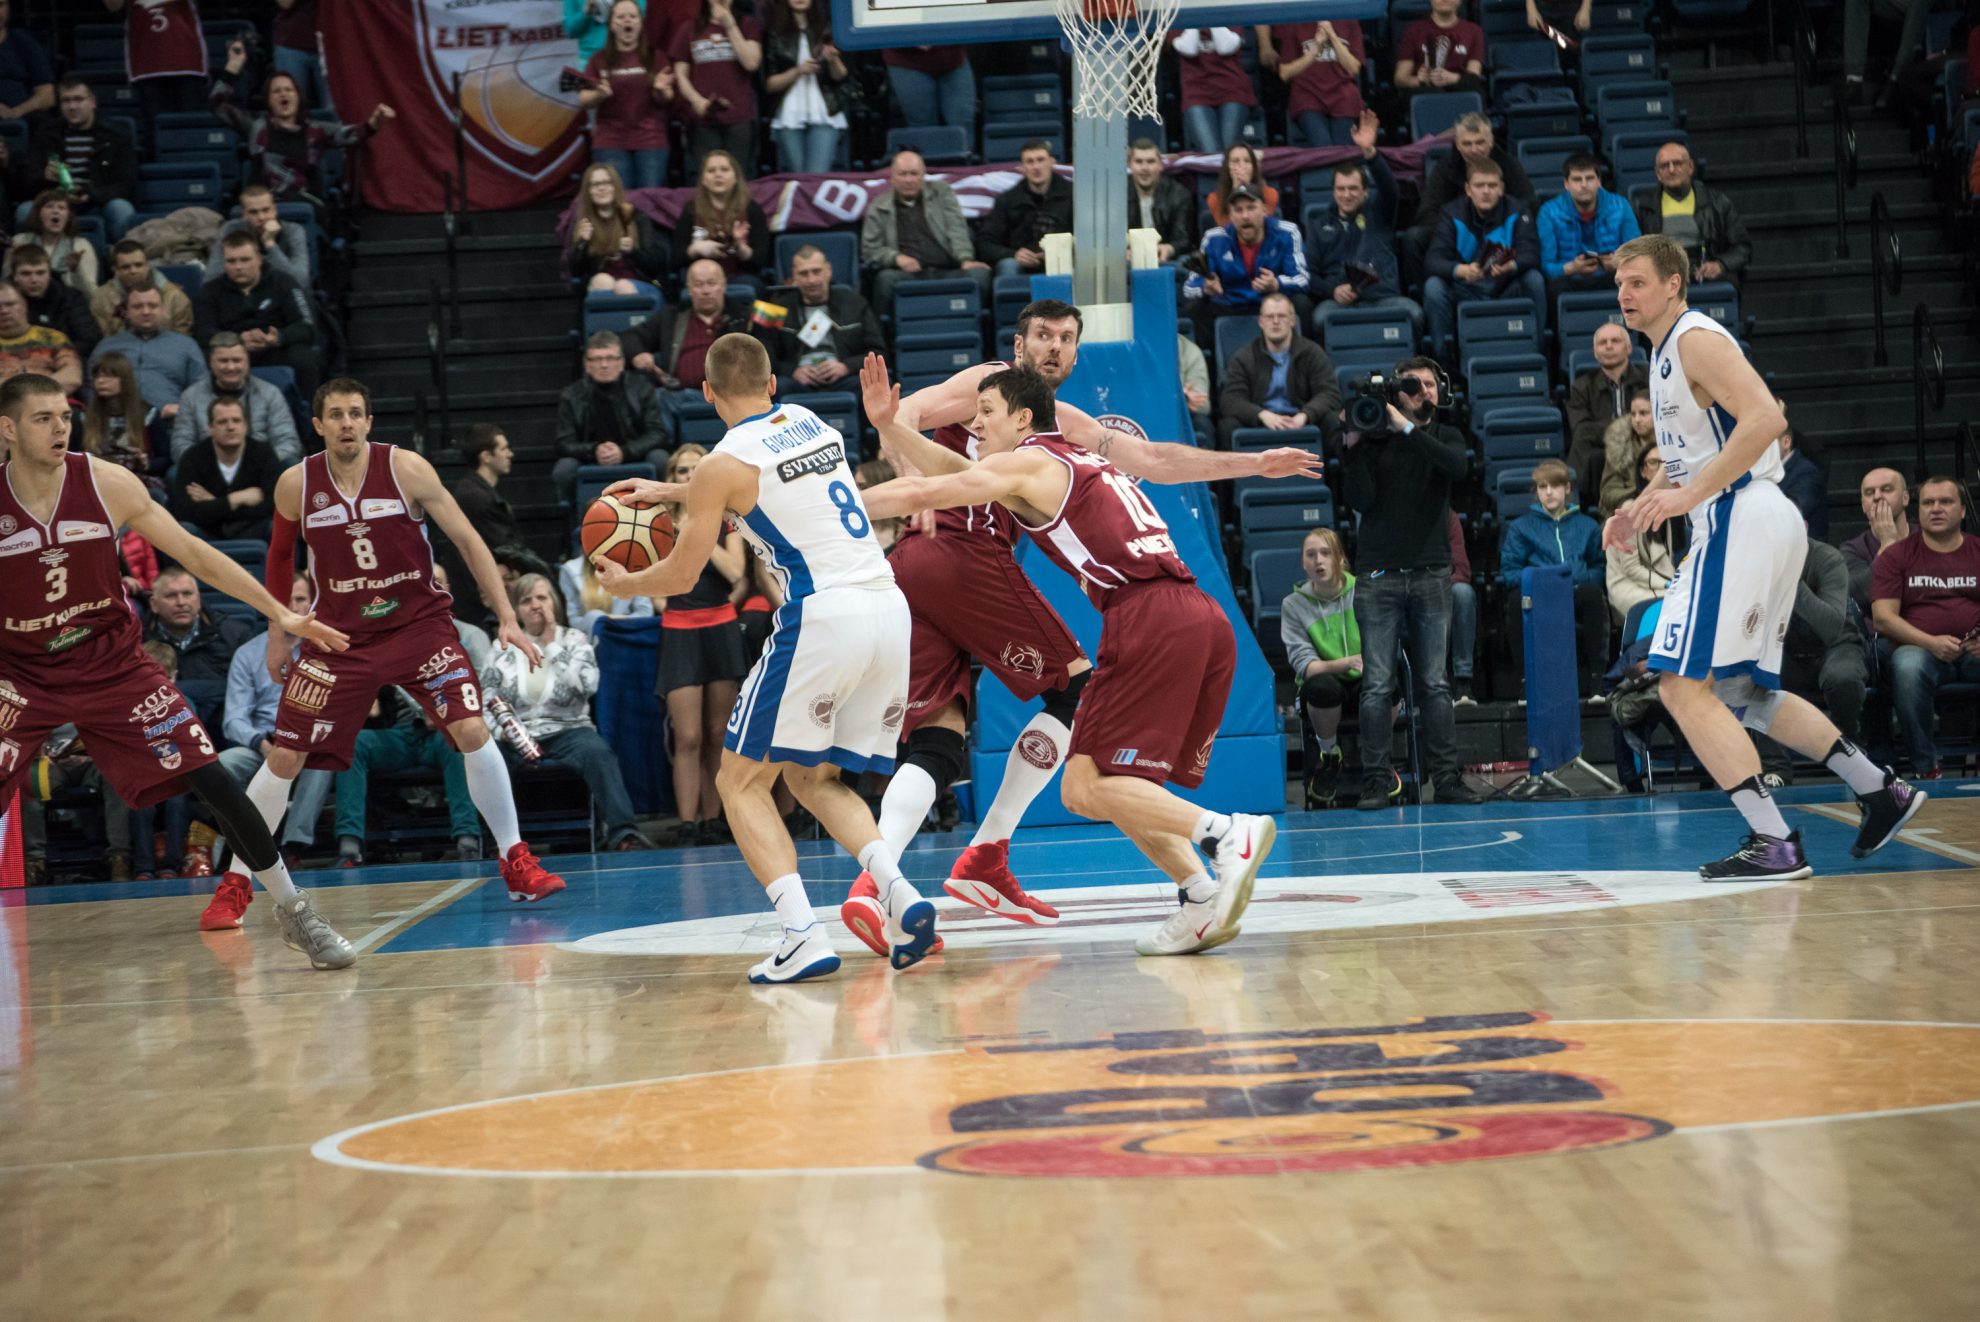 Panevėžio „Lietkabelio“ krepšininkai dar labiau atsiplėšė nuo Klaipėdos „Neptūno“ Lietuvos krepšinio lygos pirmenybėse, laimėję dvikovą Aukštaitijoje.